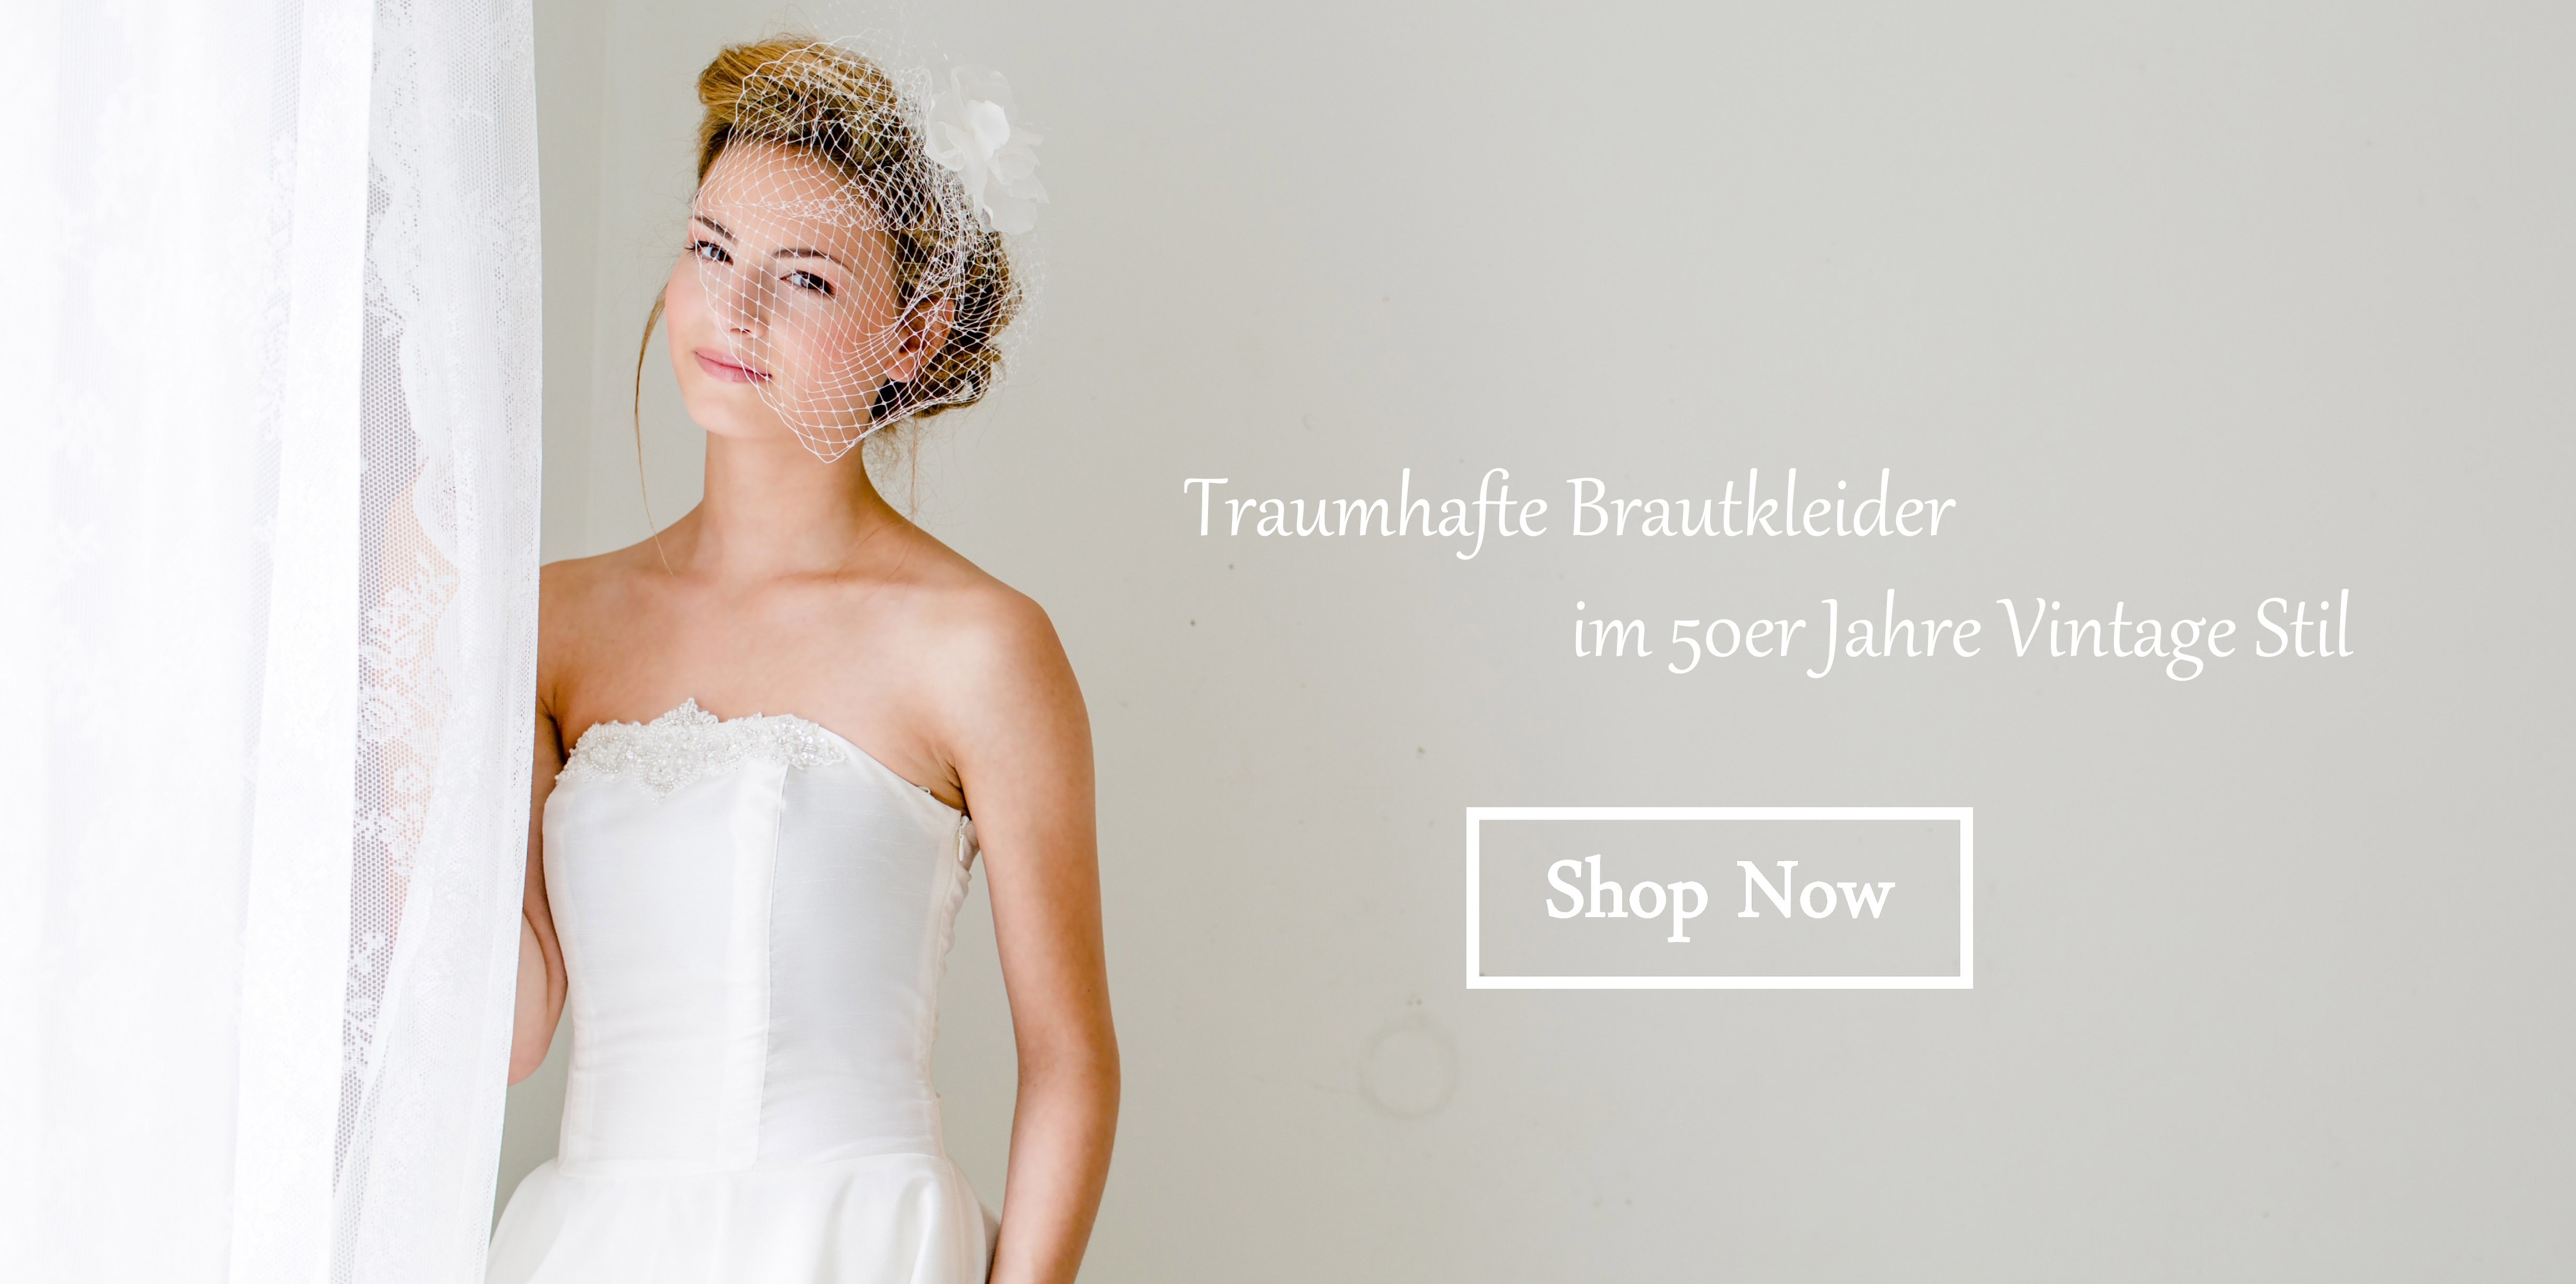 Abend Genial Brautkleid Shop Vertrieb Wunderbar Brautkleid Shop für 2019